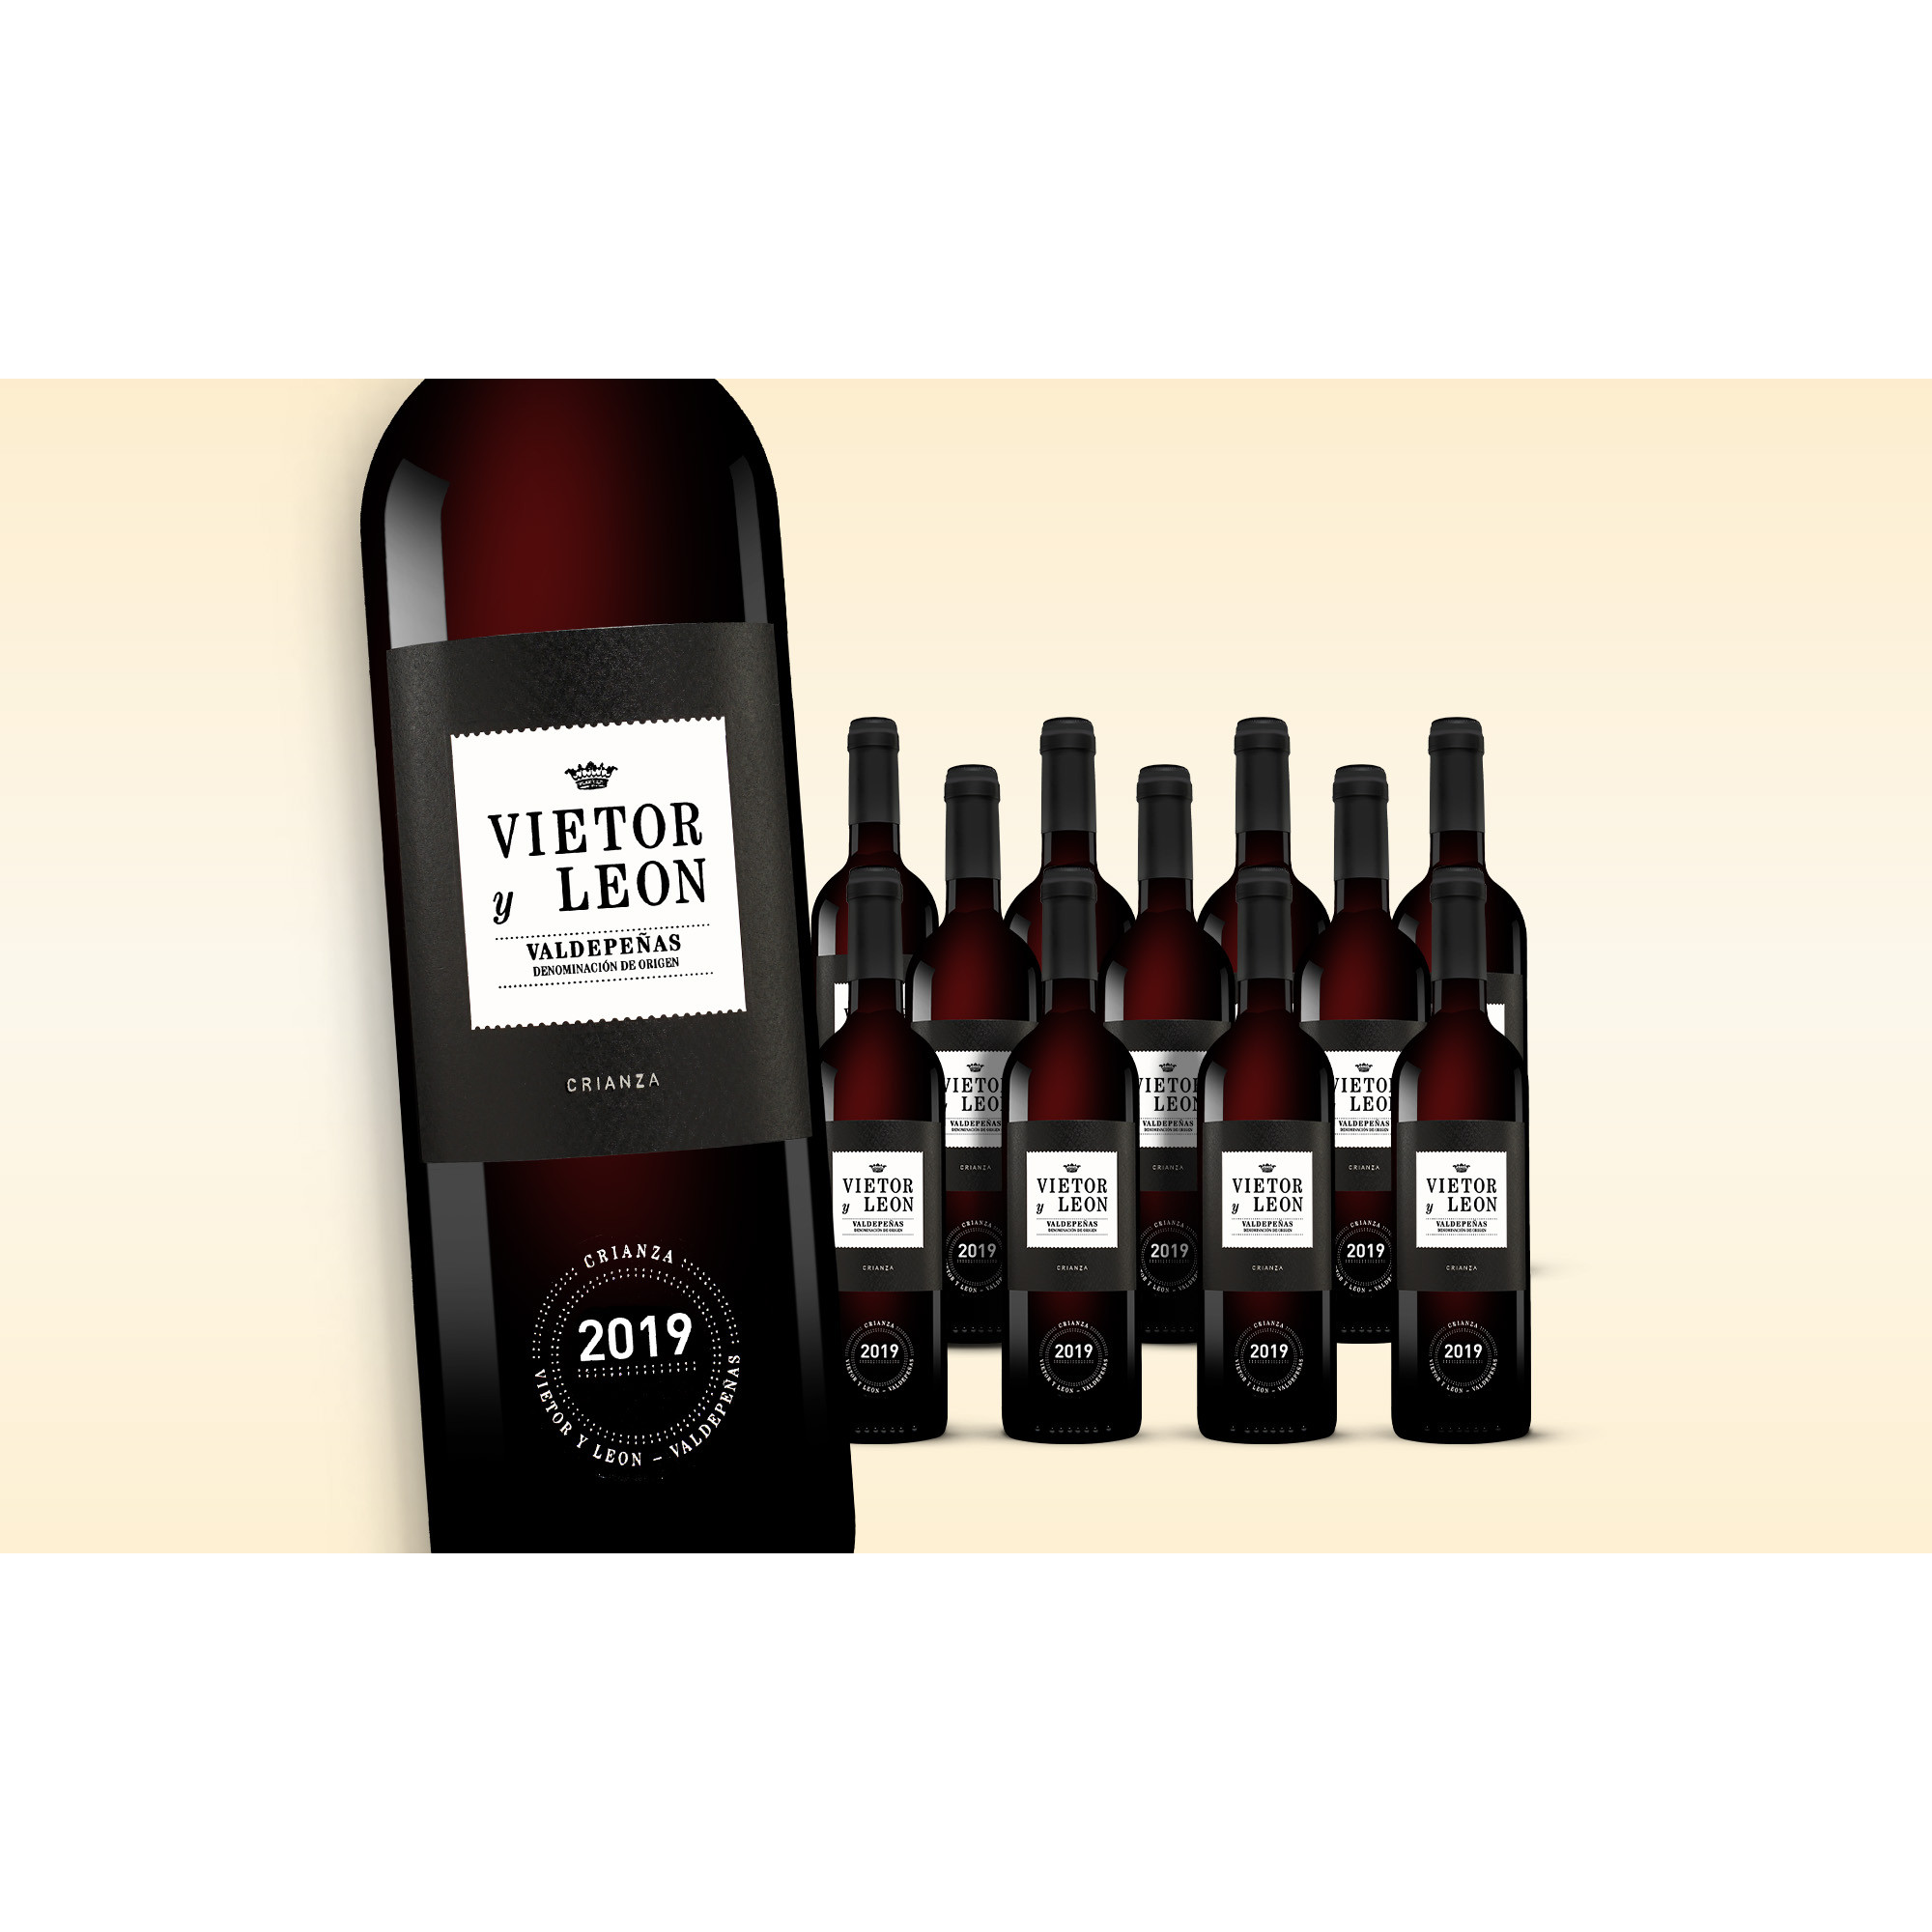 Vietor y Leon Crianza 2019  9L 13% Vol. Weinpaket aus Spanien 38096 vinos DE